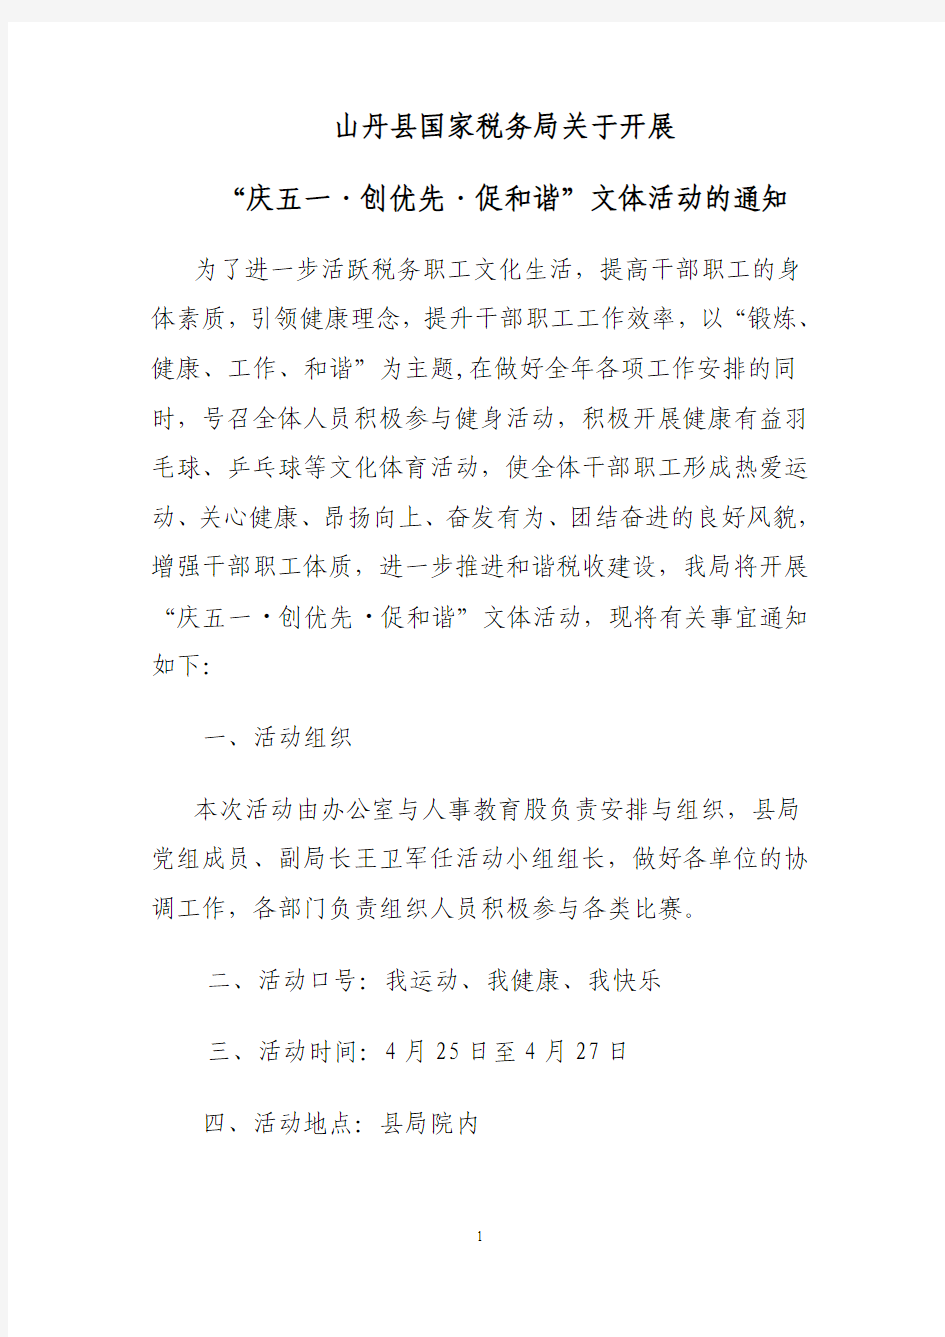 山丹县国家税务局关于举办“五一”运动会的通知